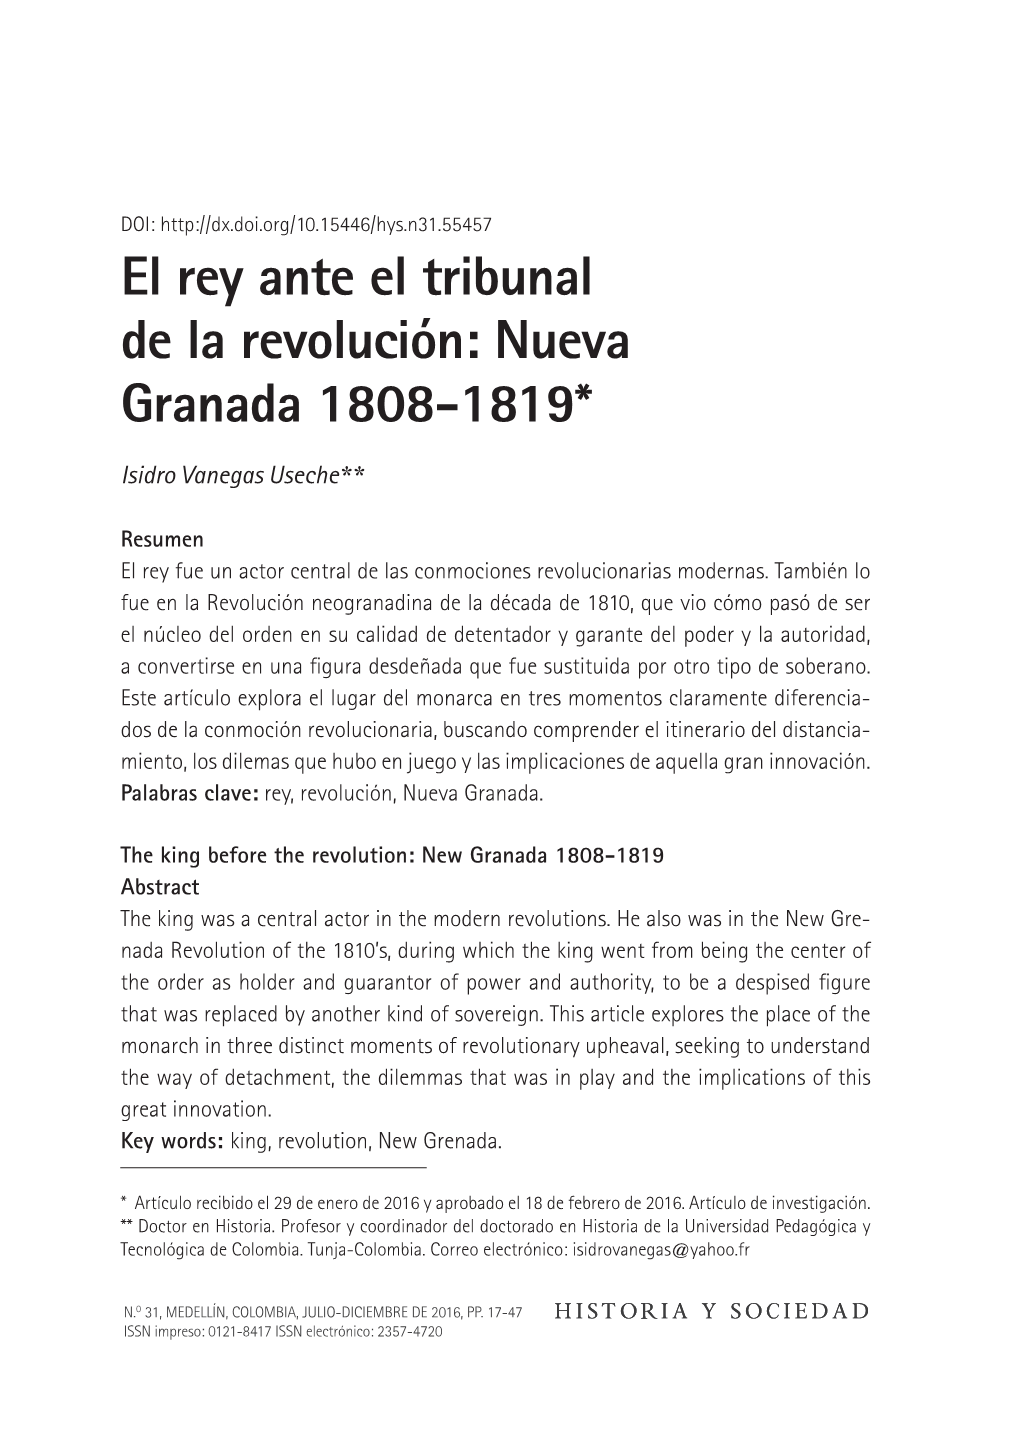 El Rey Ante El Tribunal De La Revolución: Nueva Granada 1808-1819*